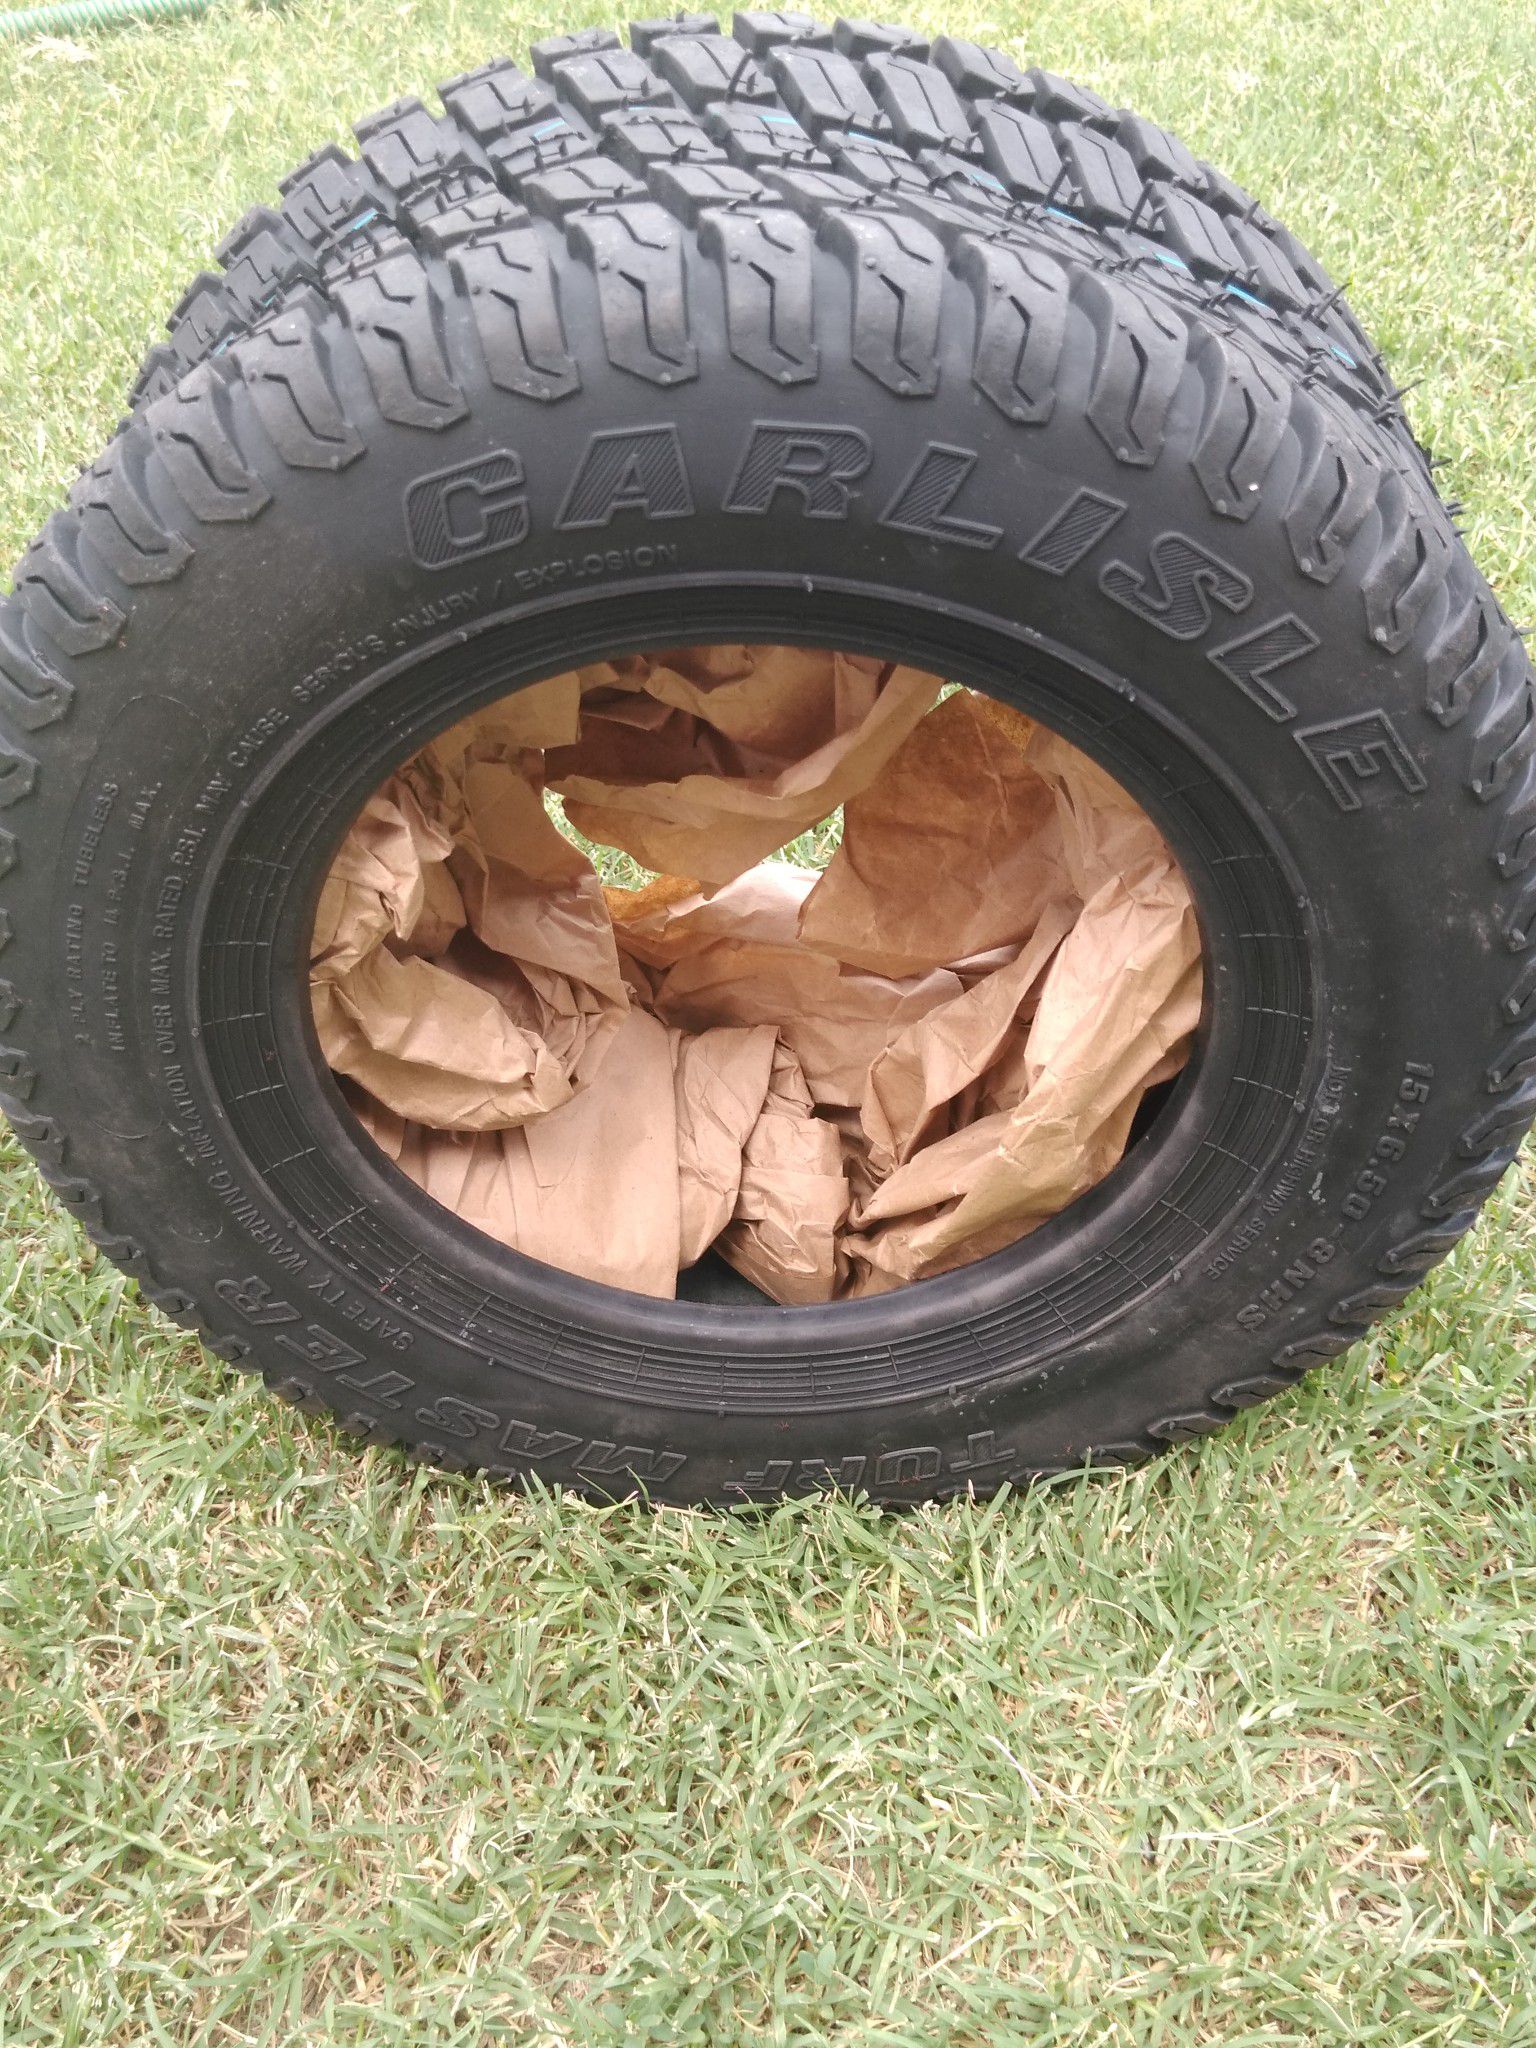 New garden tractor tire